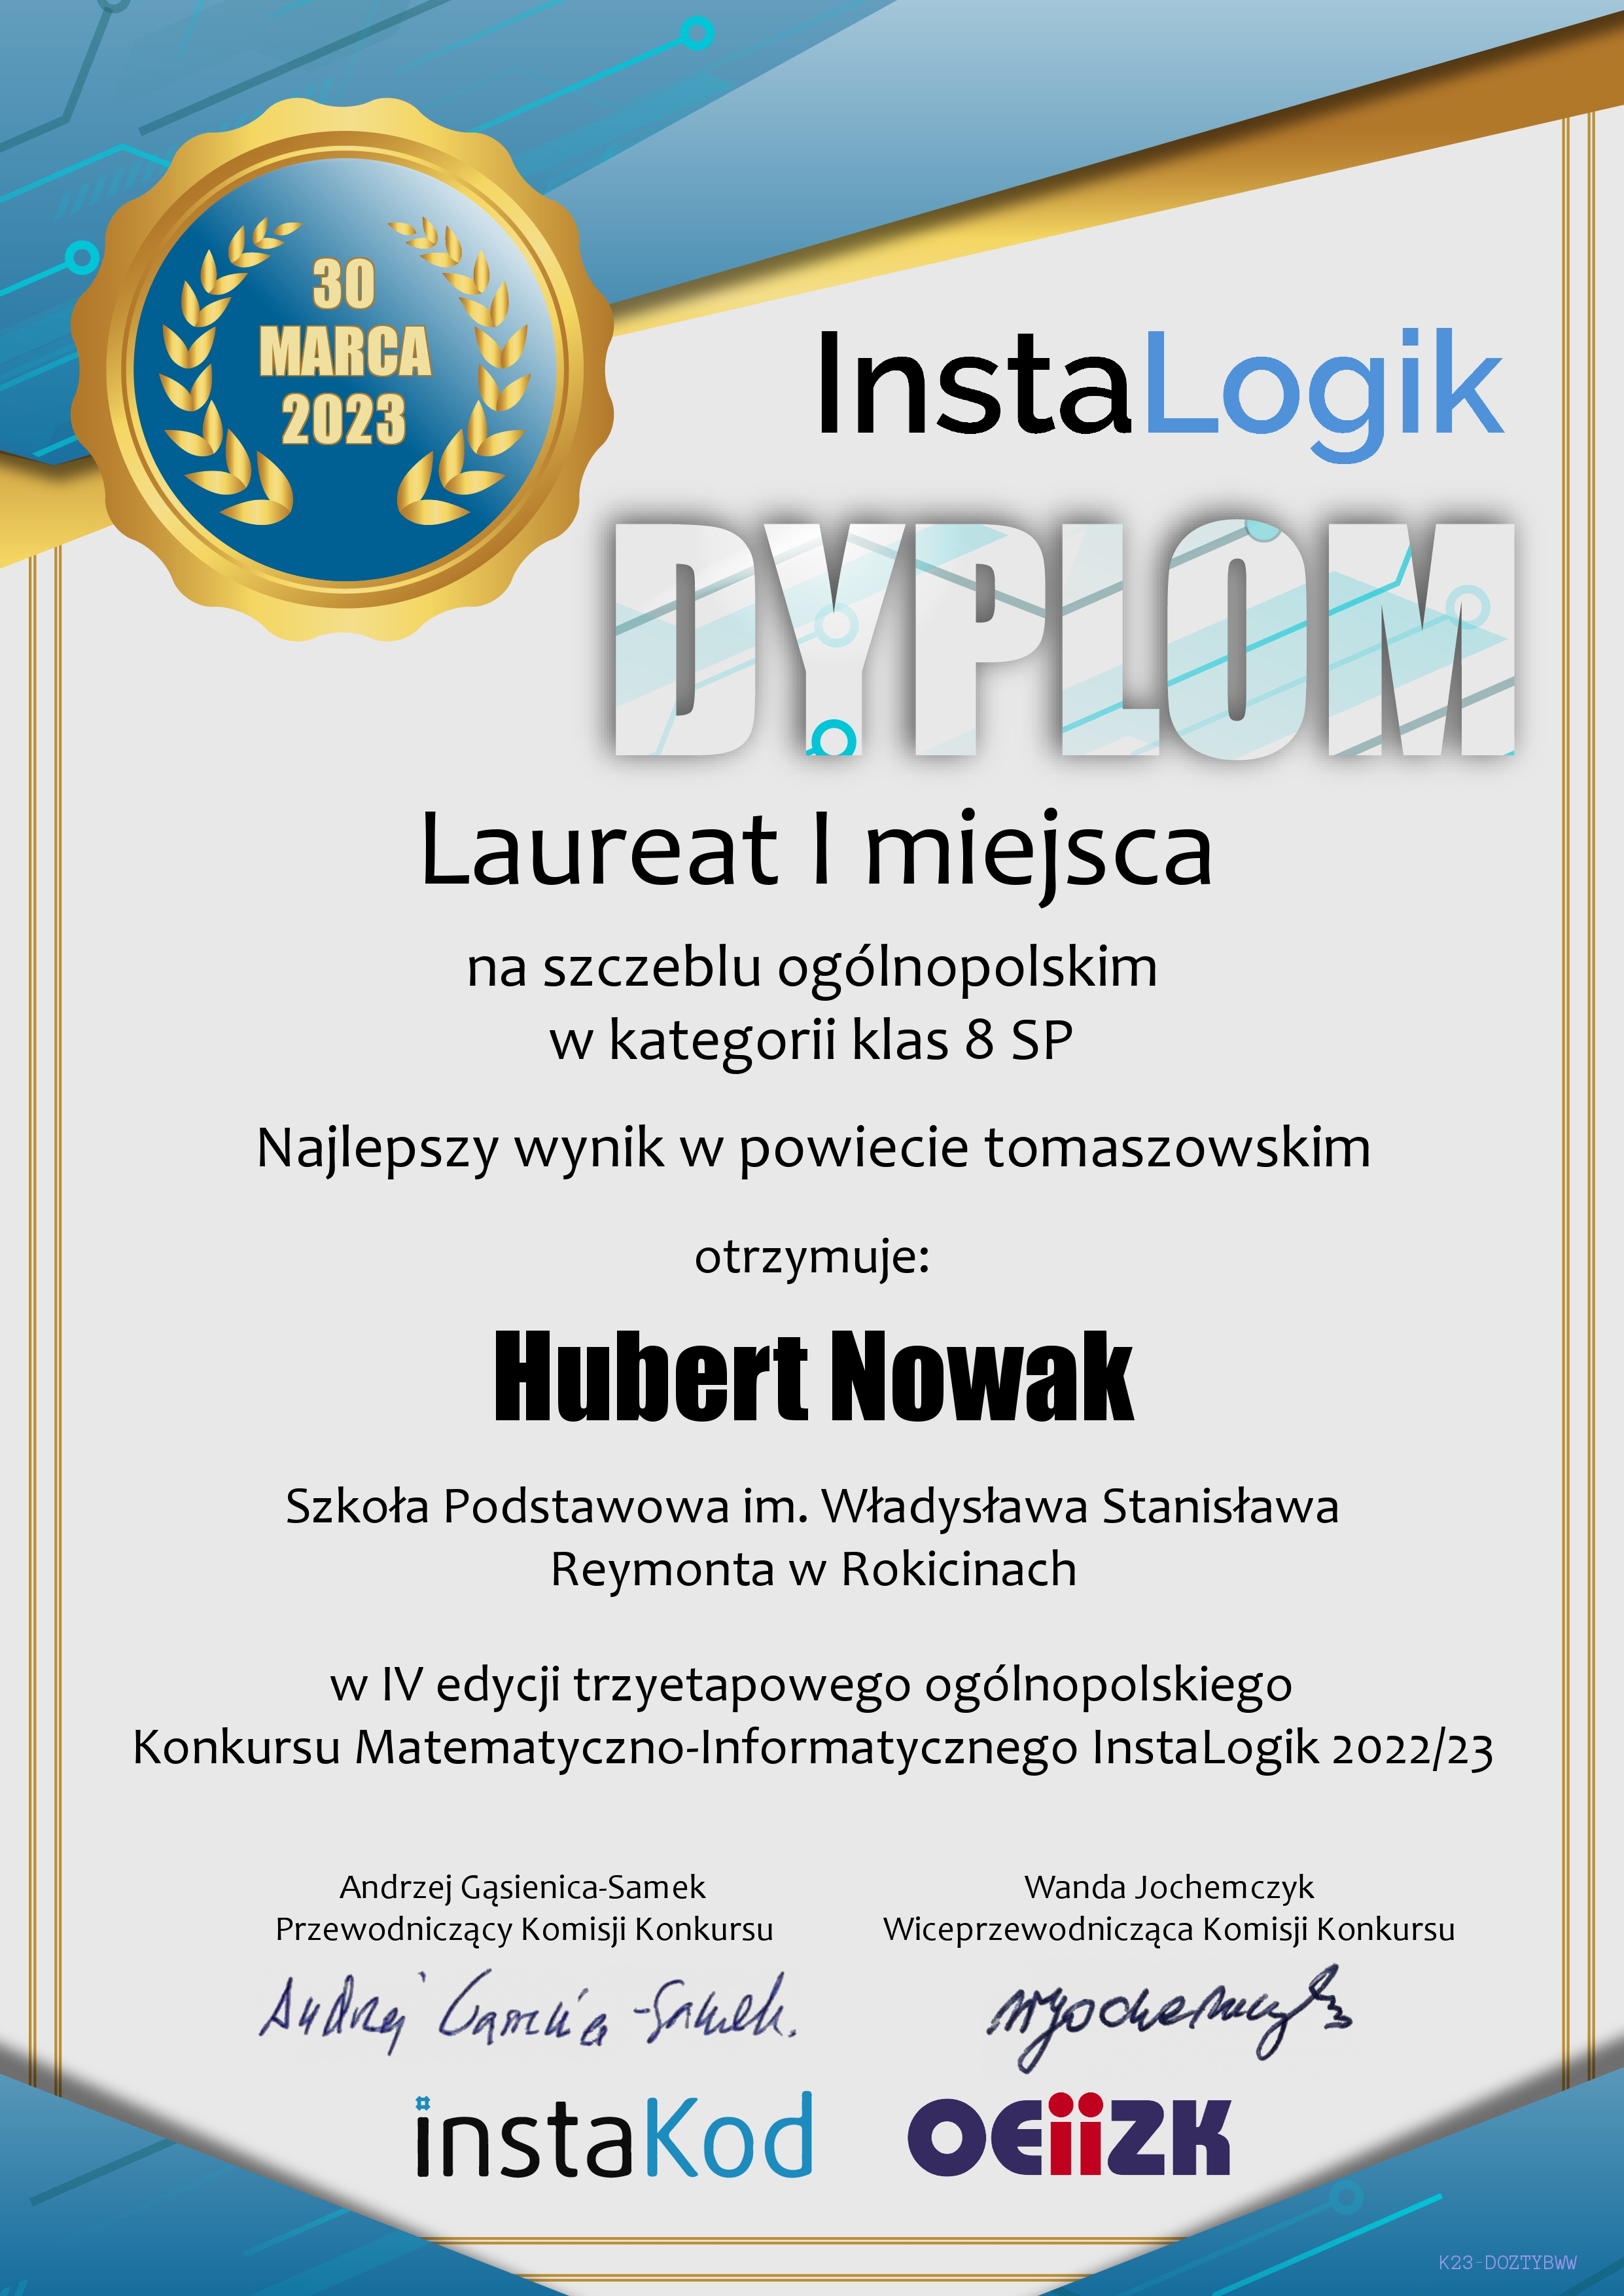 Dyplom dla Huberta Nowaka.